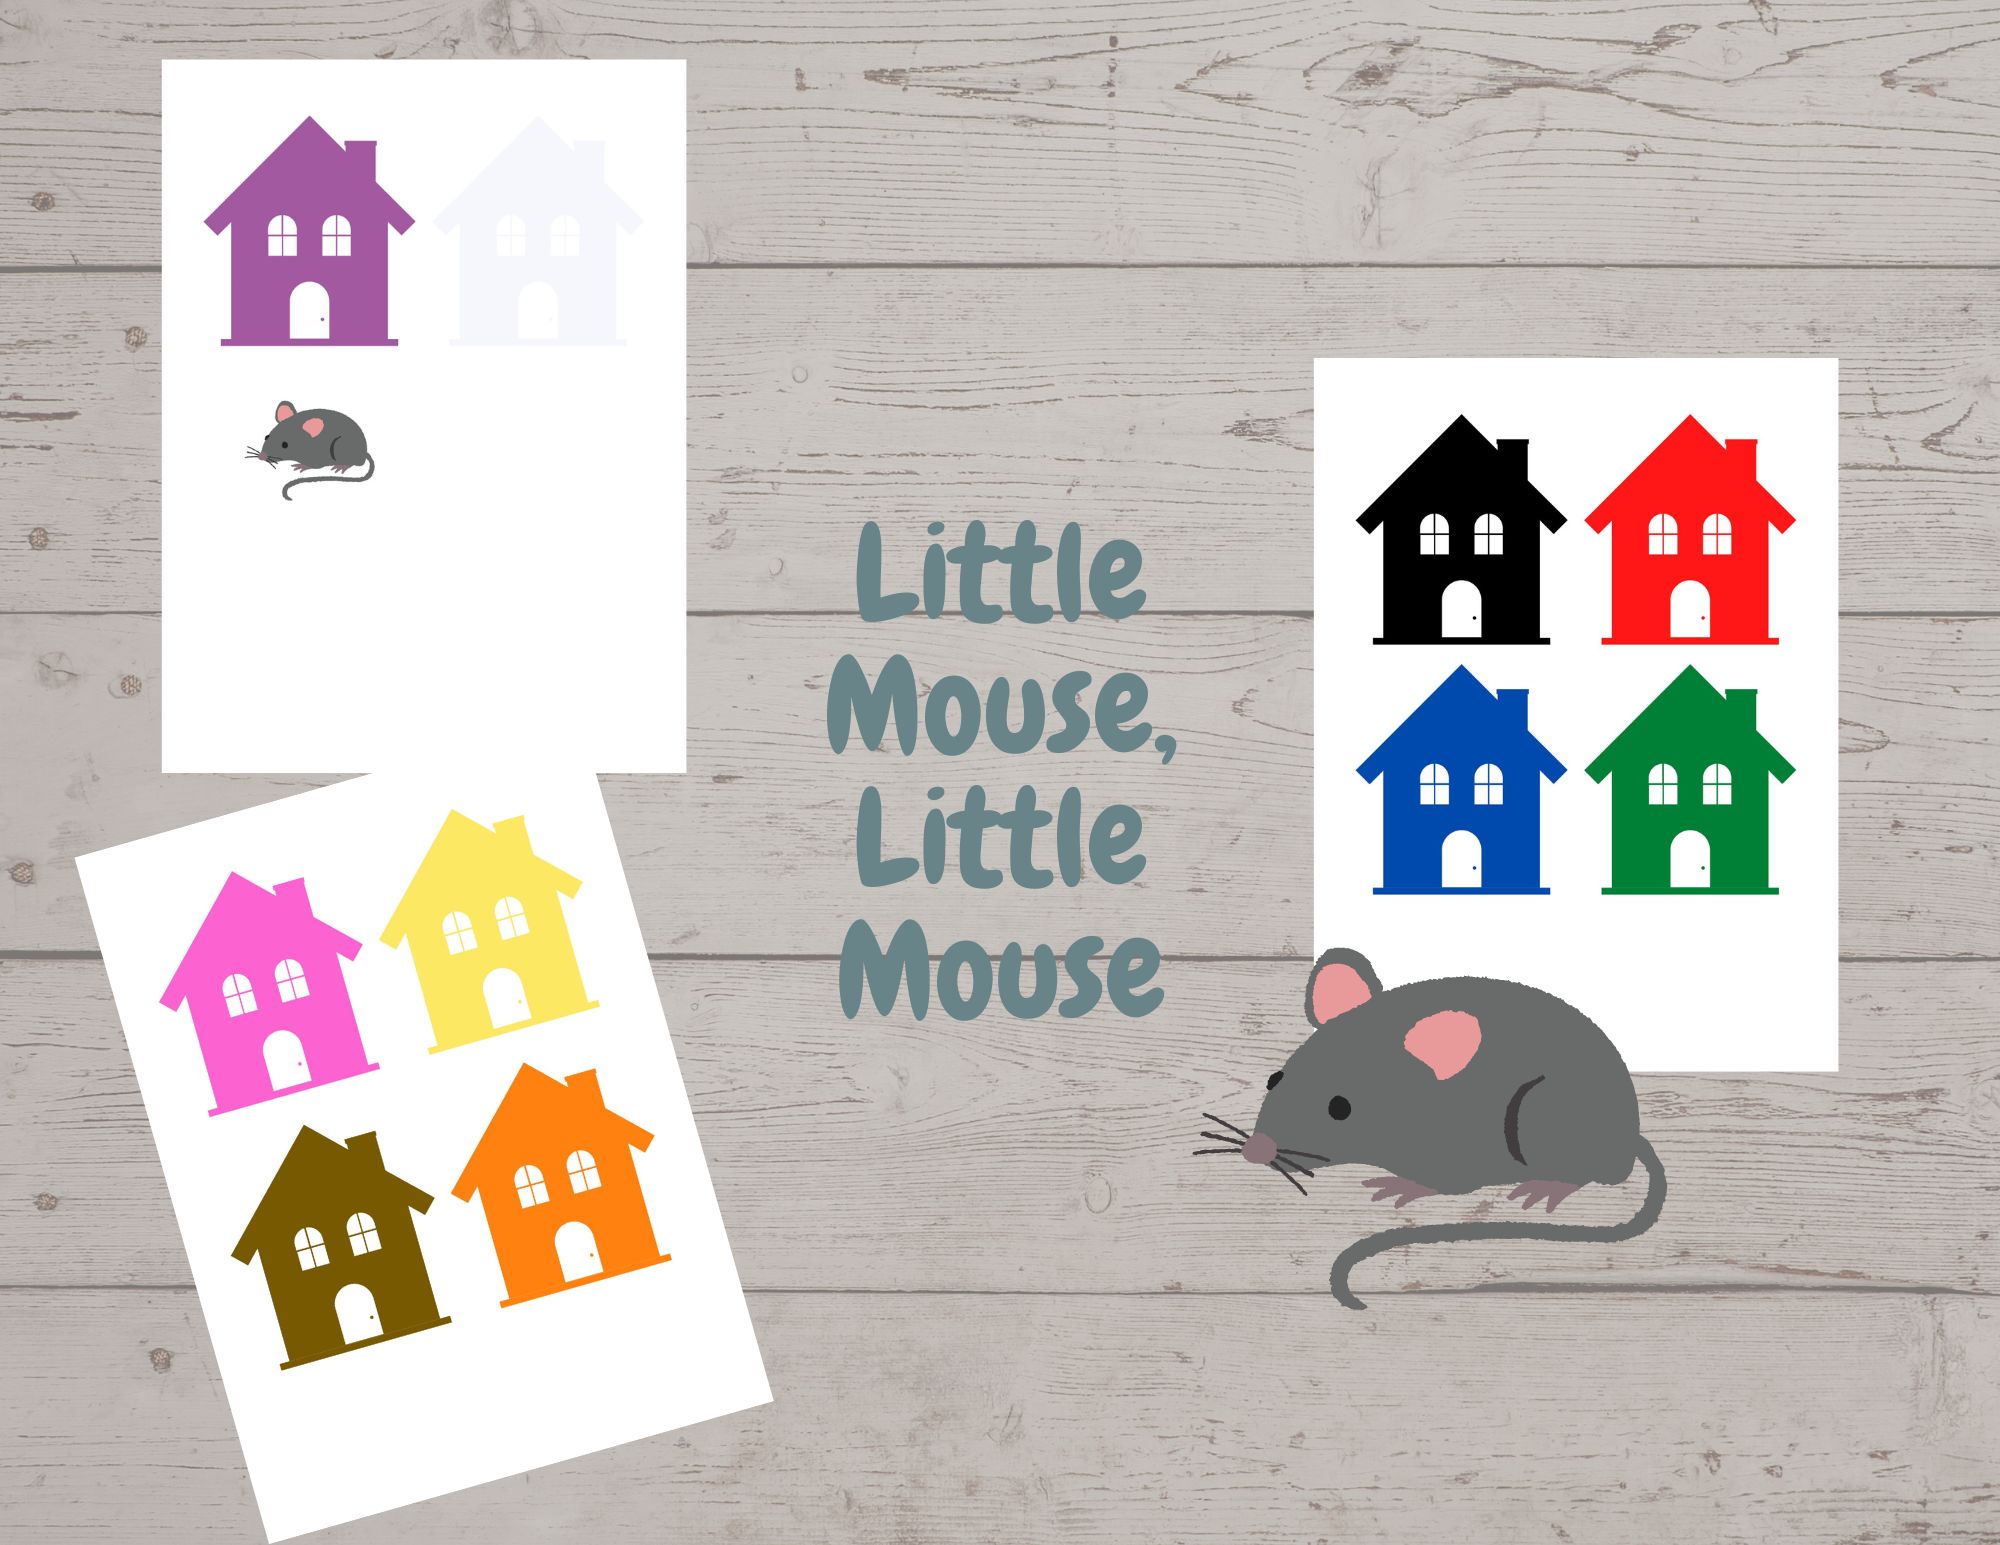 Little Mouse, Little Mouse